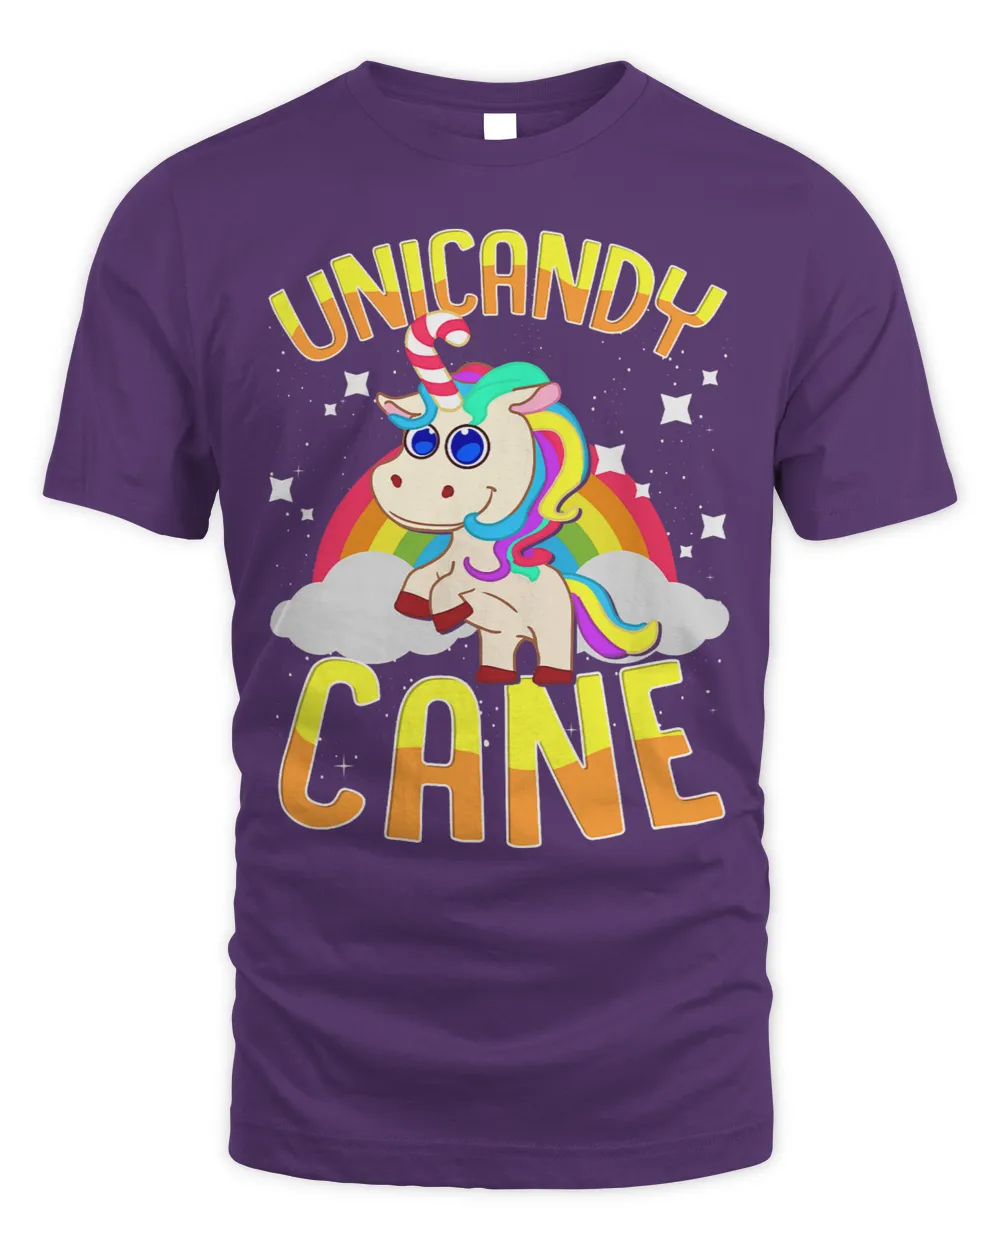 UniCandy Cane Unicorn Xmas Candy Cane